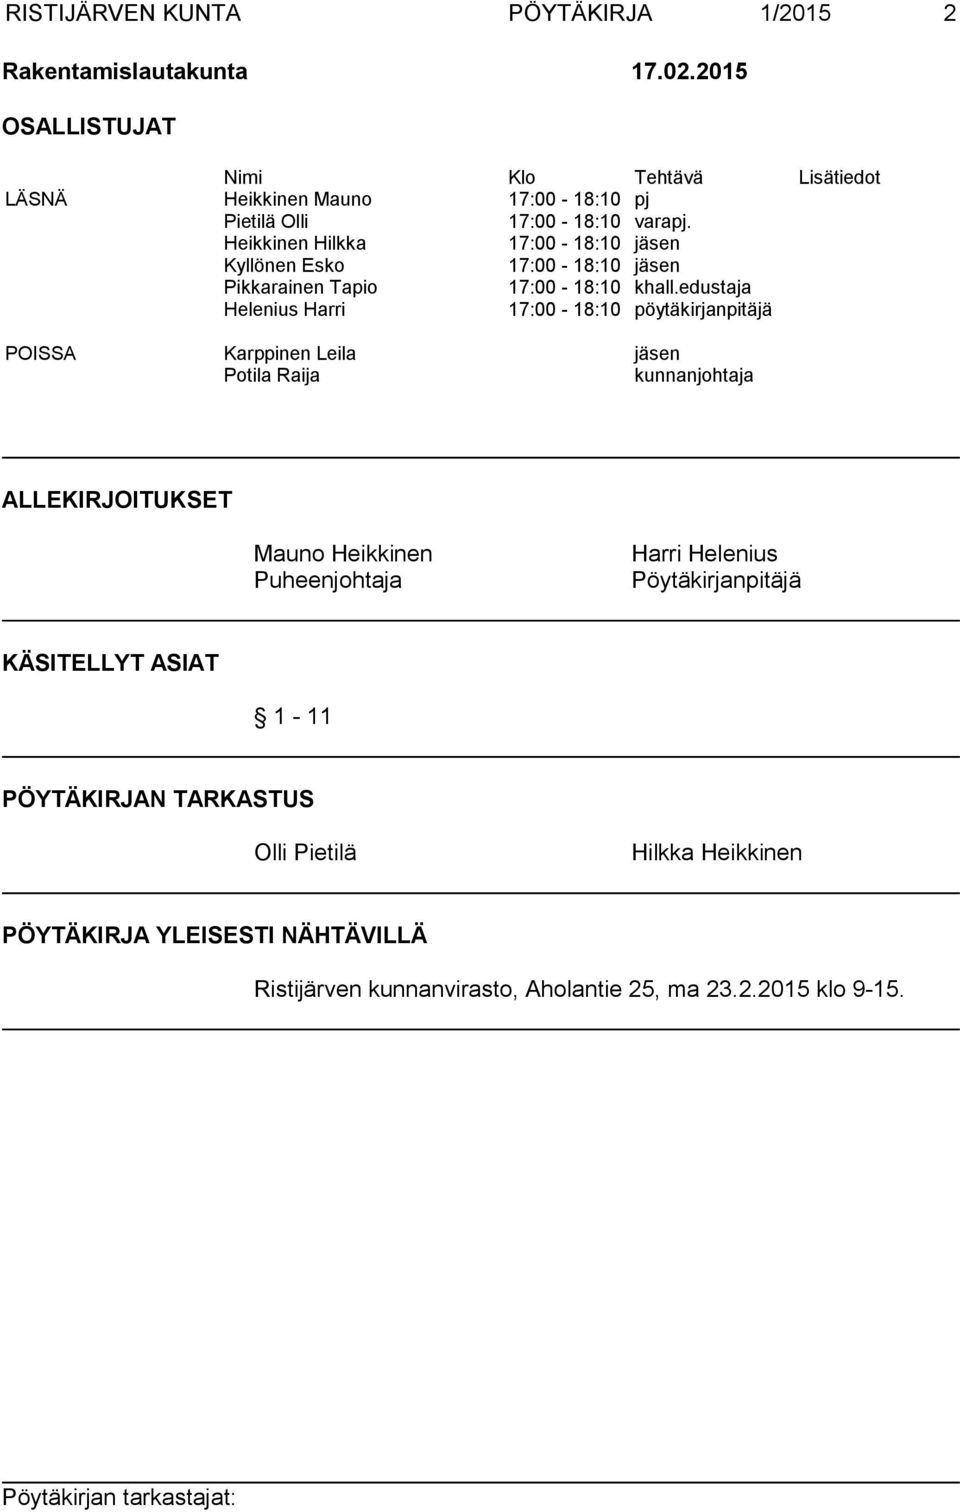 Heikkinen Hilkka 17:00-18:10 jäsen Kyllönen Esko 17:00-18:10 jäsen Pikkarainen Tapio 17:00-18:10 khall.